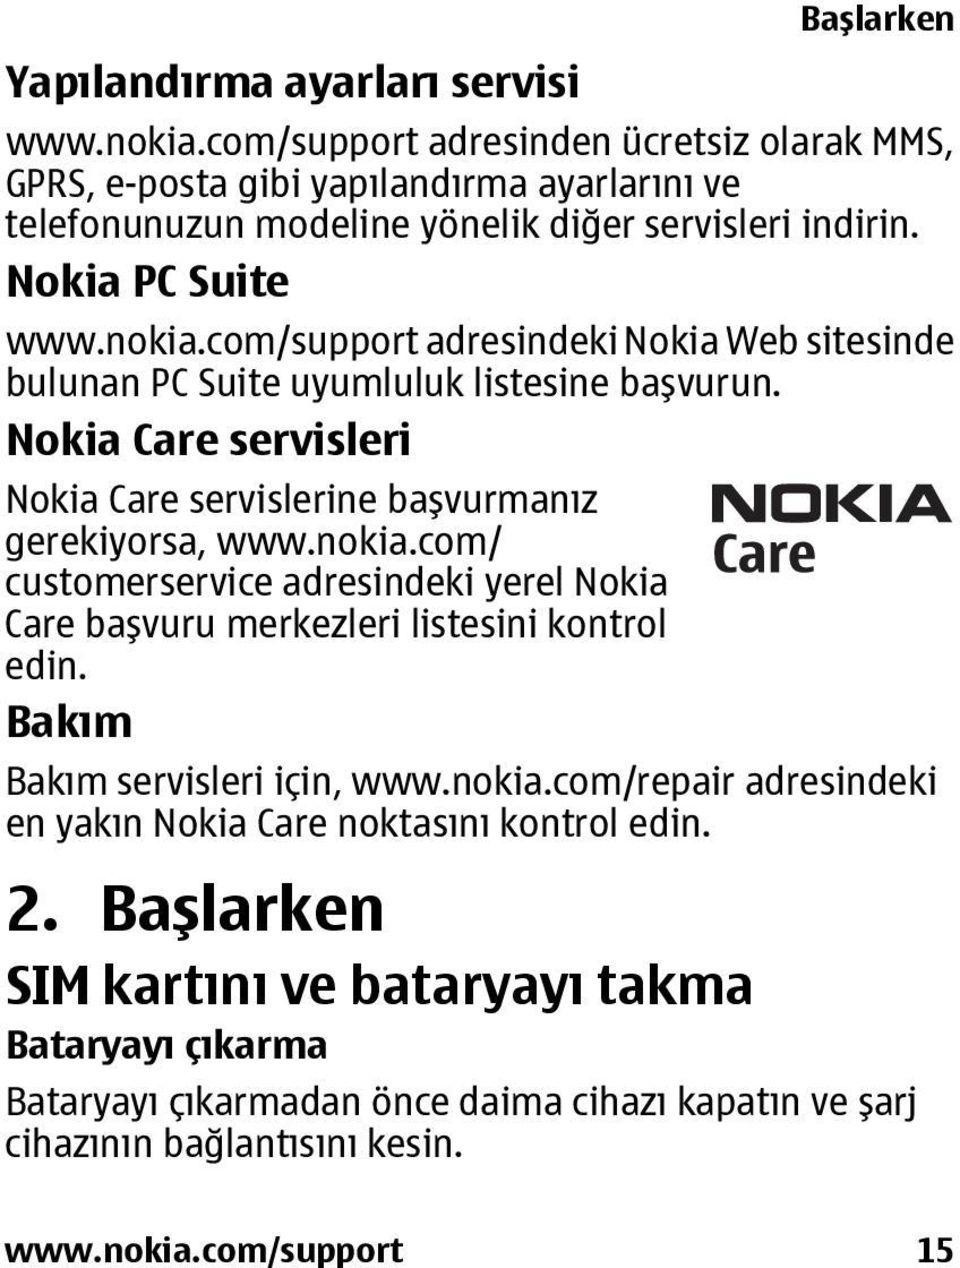 nokia.com/ customerservice adresindeki yerel Nokia Care başvuru merkezleri listesini kontrol edin. Bakım Bakım servisleri için, www.nokia.com/repair adresindeki en yakın Nokia Care noktasını kontrol edin.